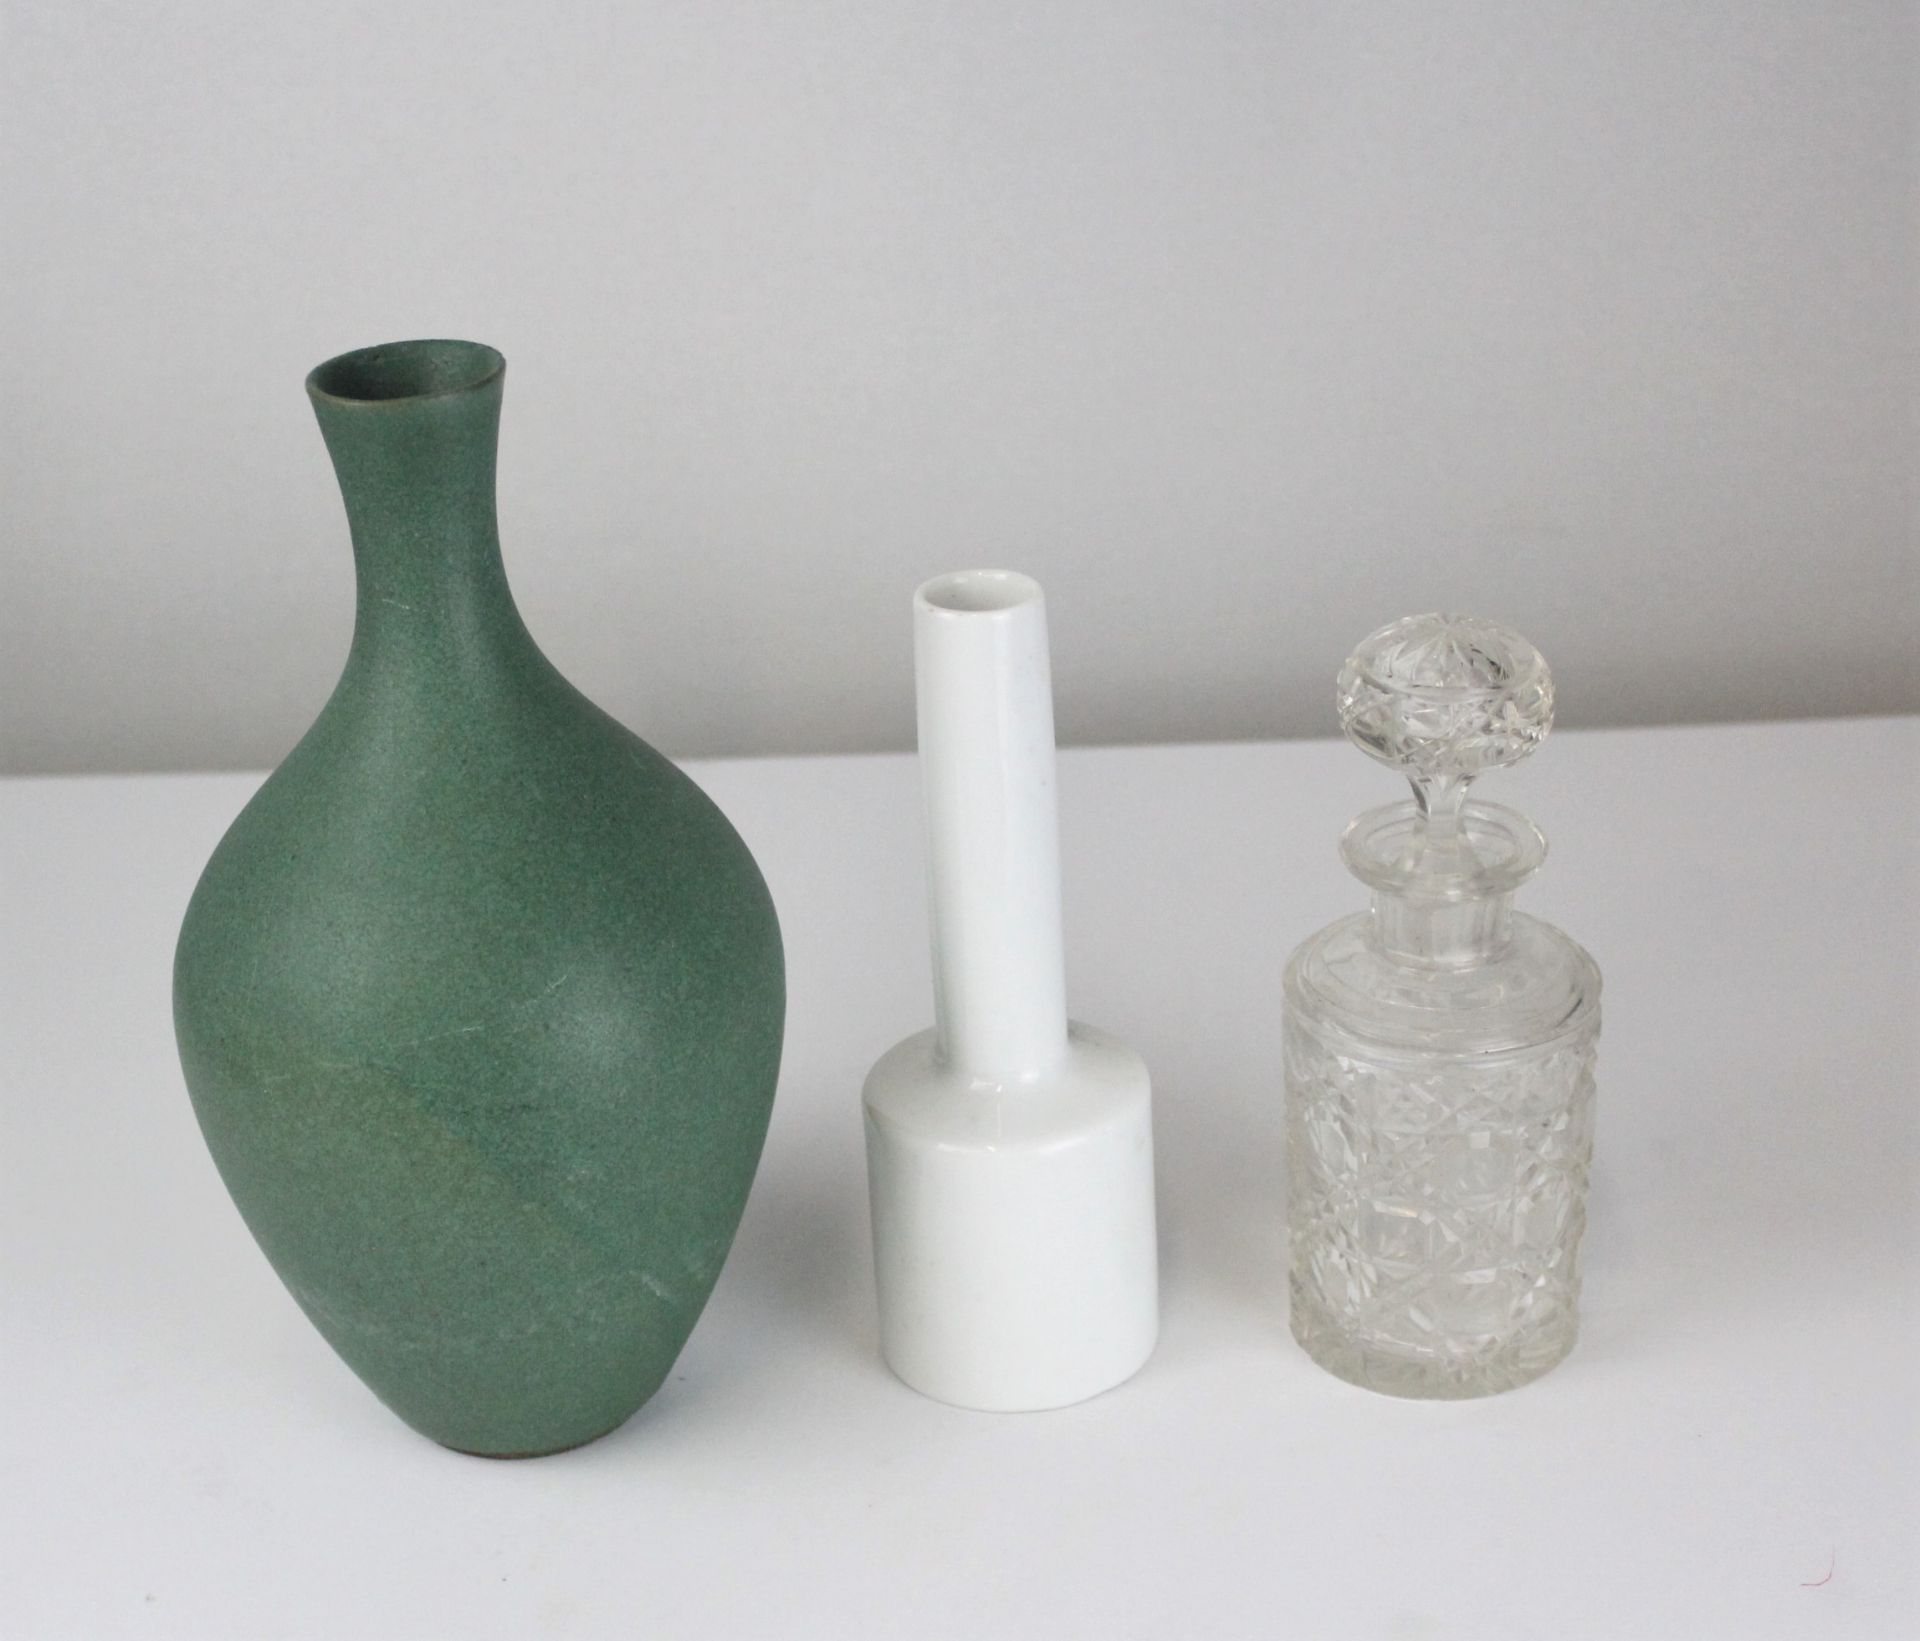 Bleikristall Likörflasche, Keramik Stangenvase und Keramikvase